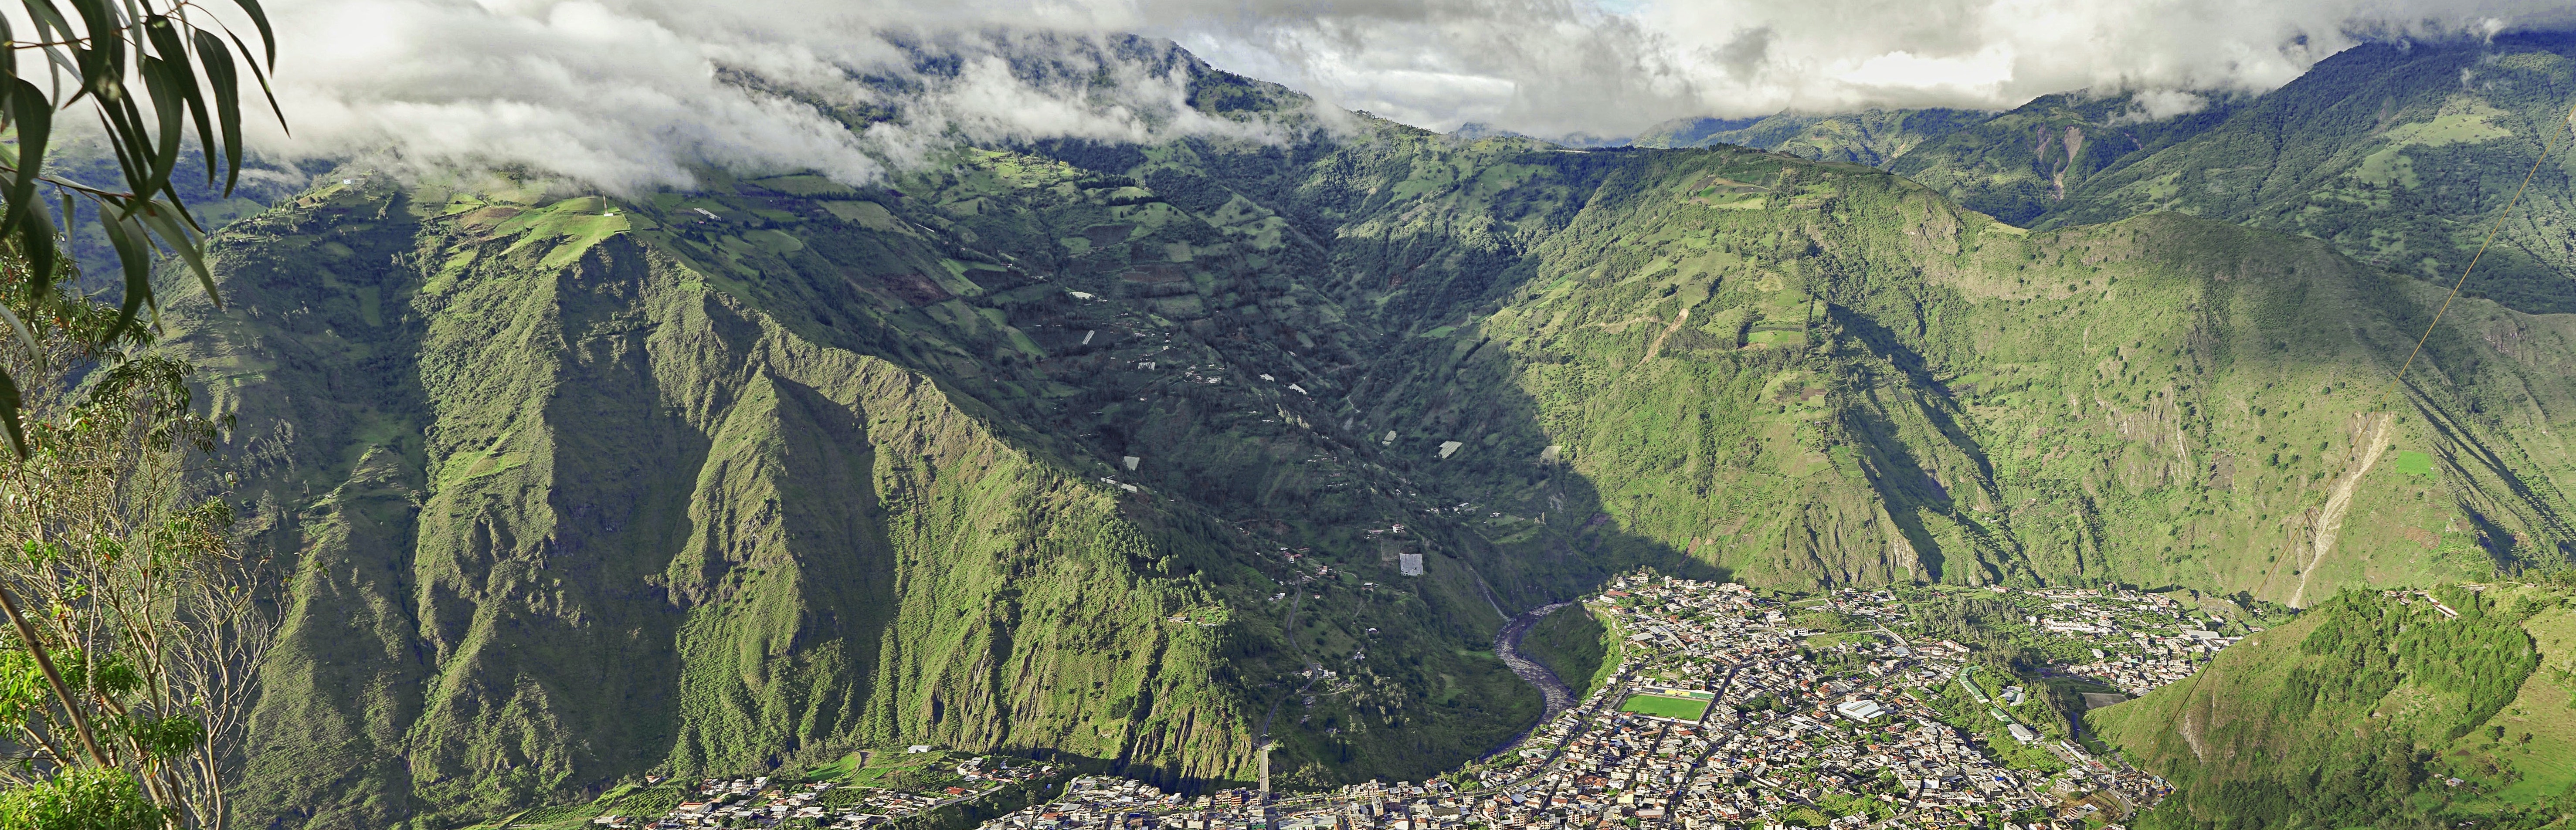 Aerial View of Banos, Ecuador